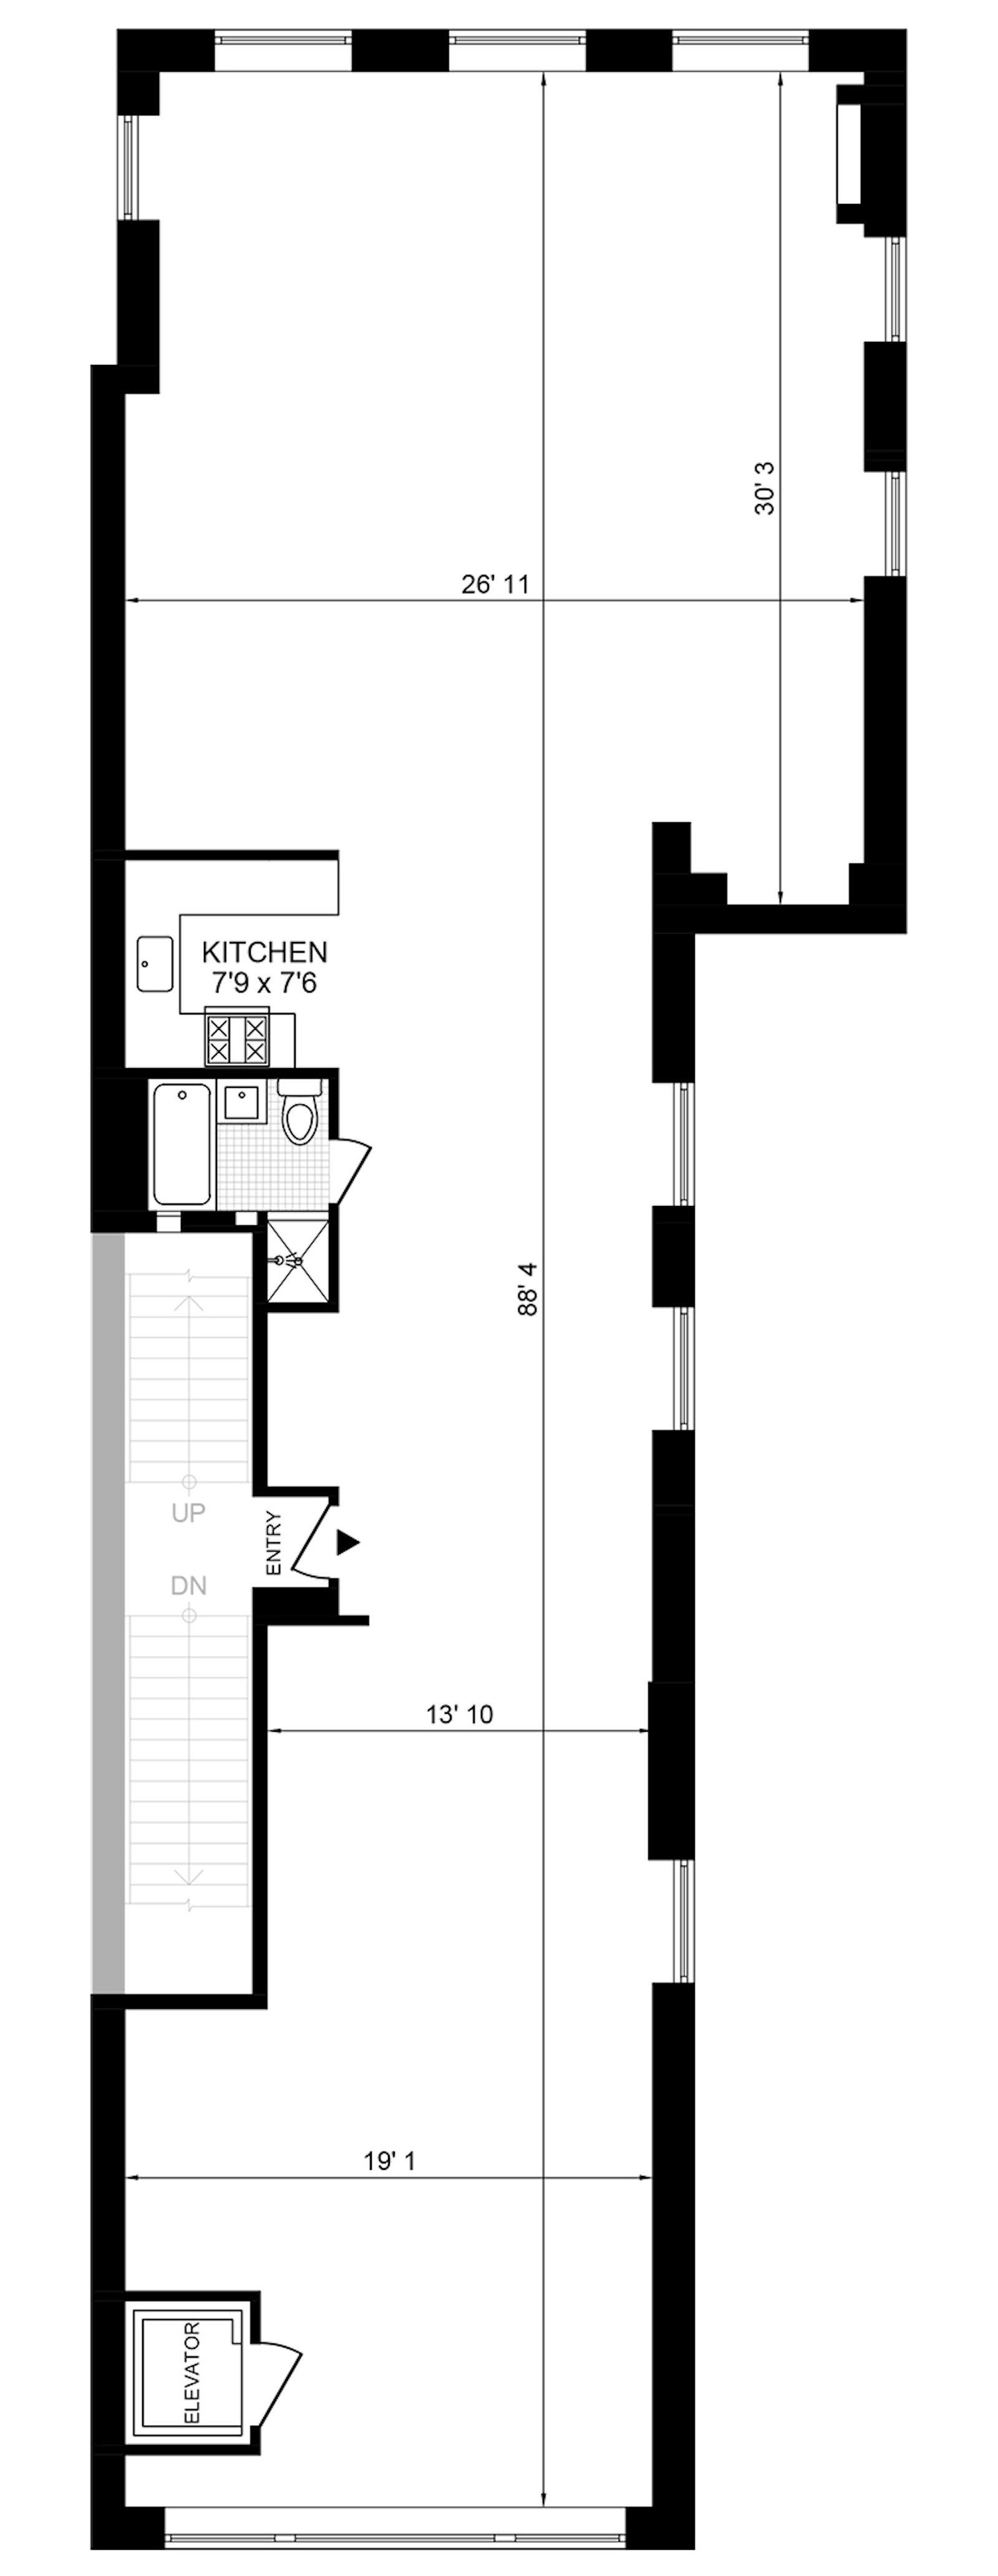 Floorplan for 113 Greene Street 2ndflr